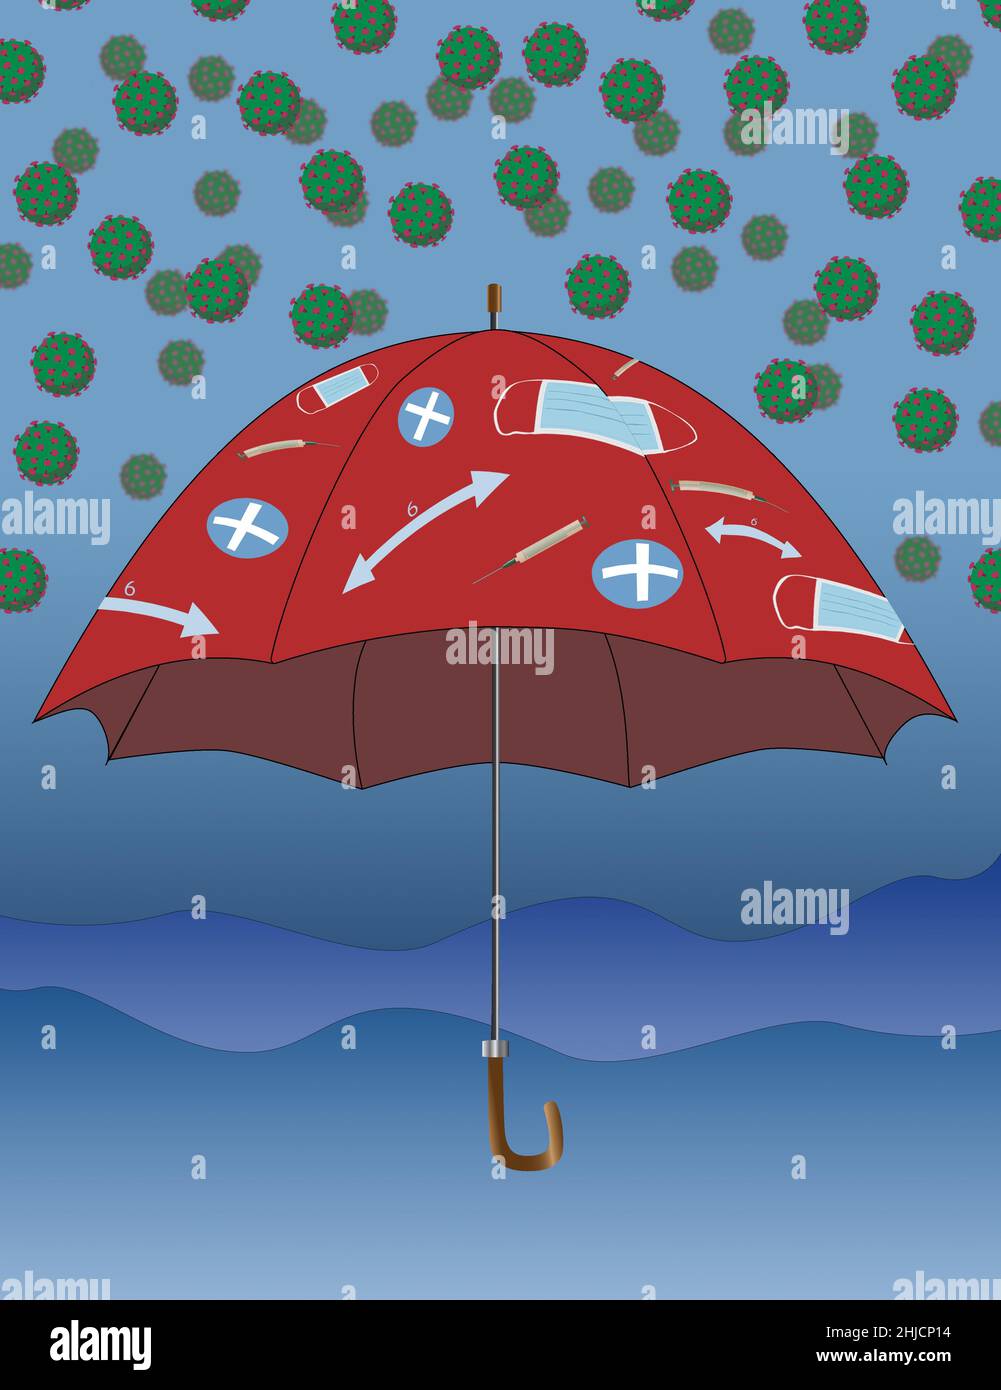 Ein Regenschirm mit Symbolen zum Schutz vor dem Coronavirus oder COVID-19. Symbole sind eine Spritze mit dem Impfstoff, soziale Distanzierung, Gesundheitswesen und Masken. Stockfoto